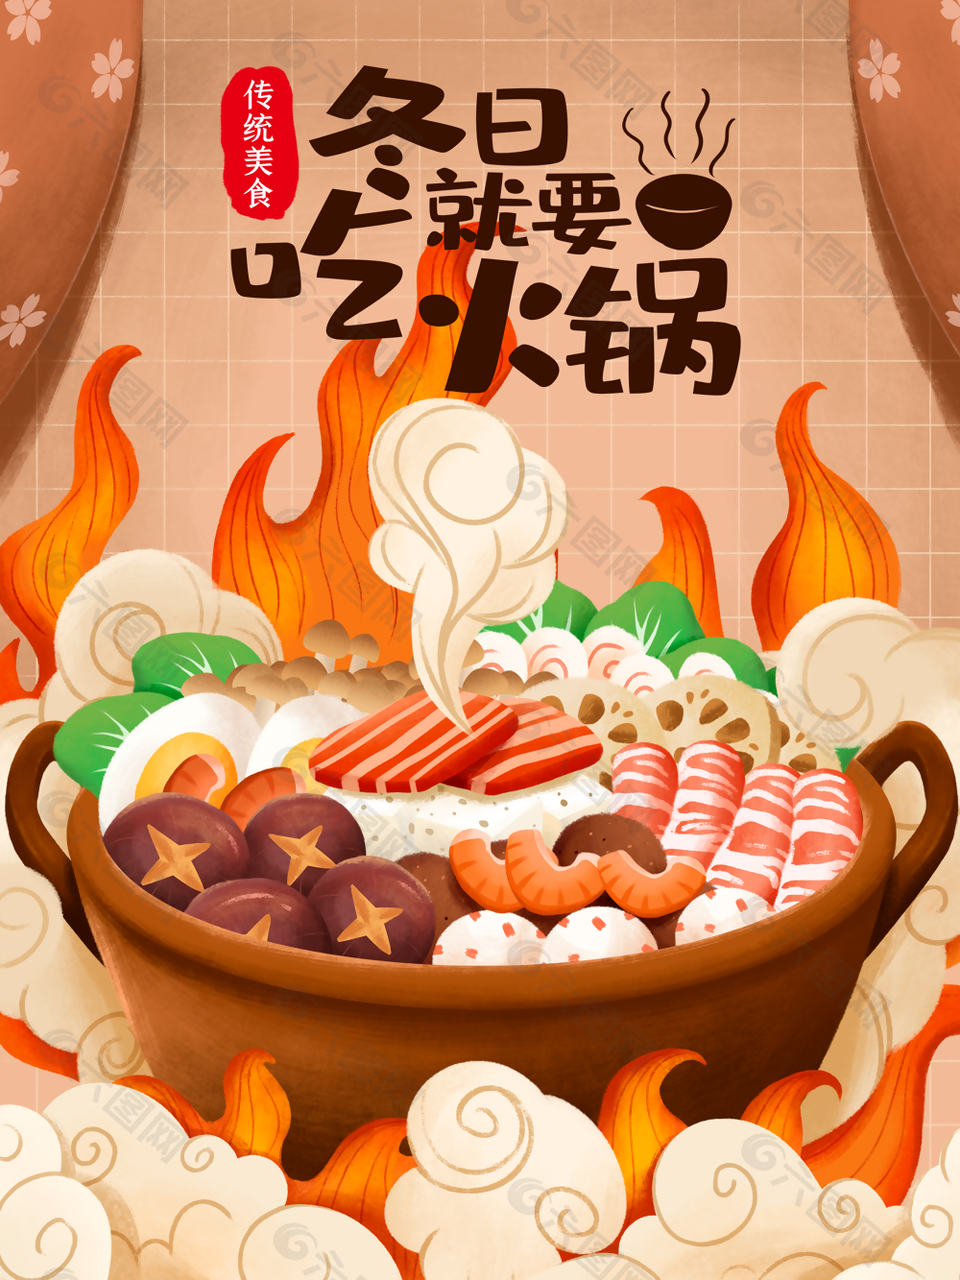 精美手绘插画风传统美食火锅海报设计